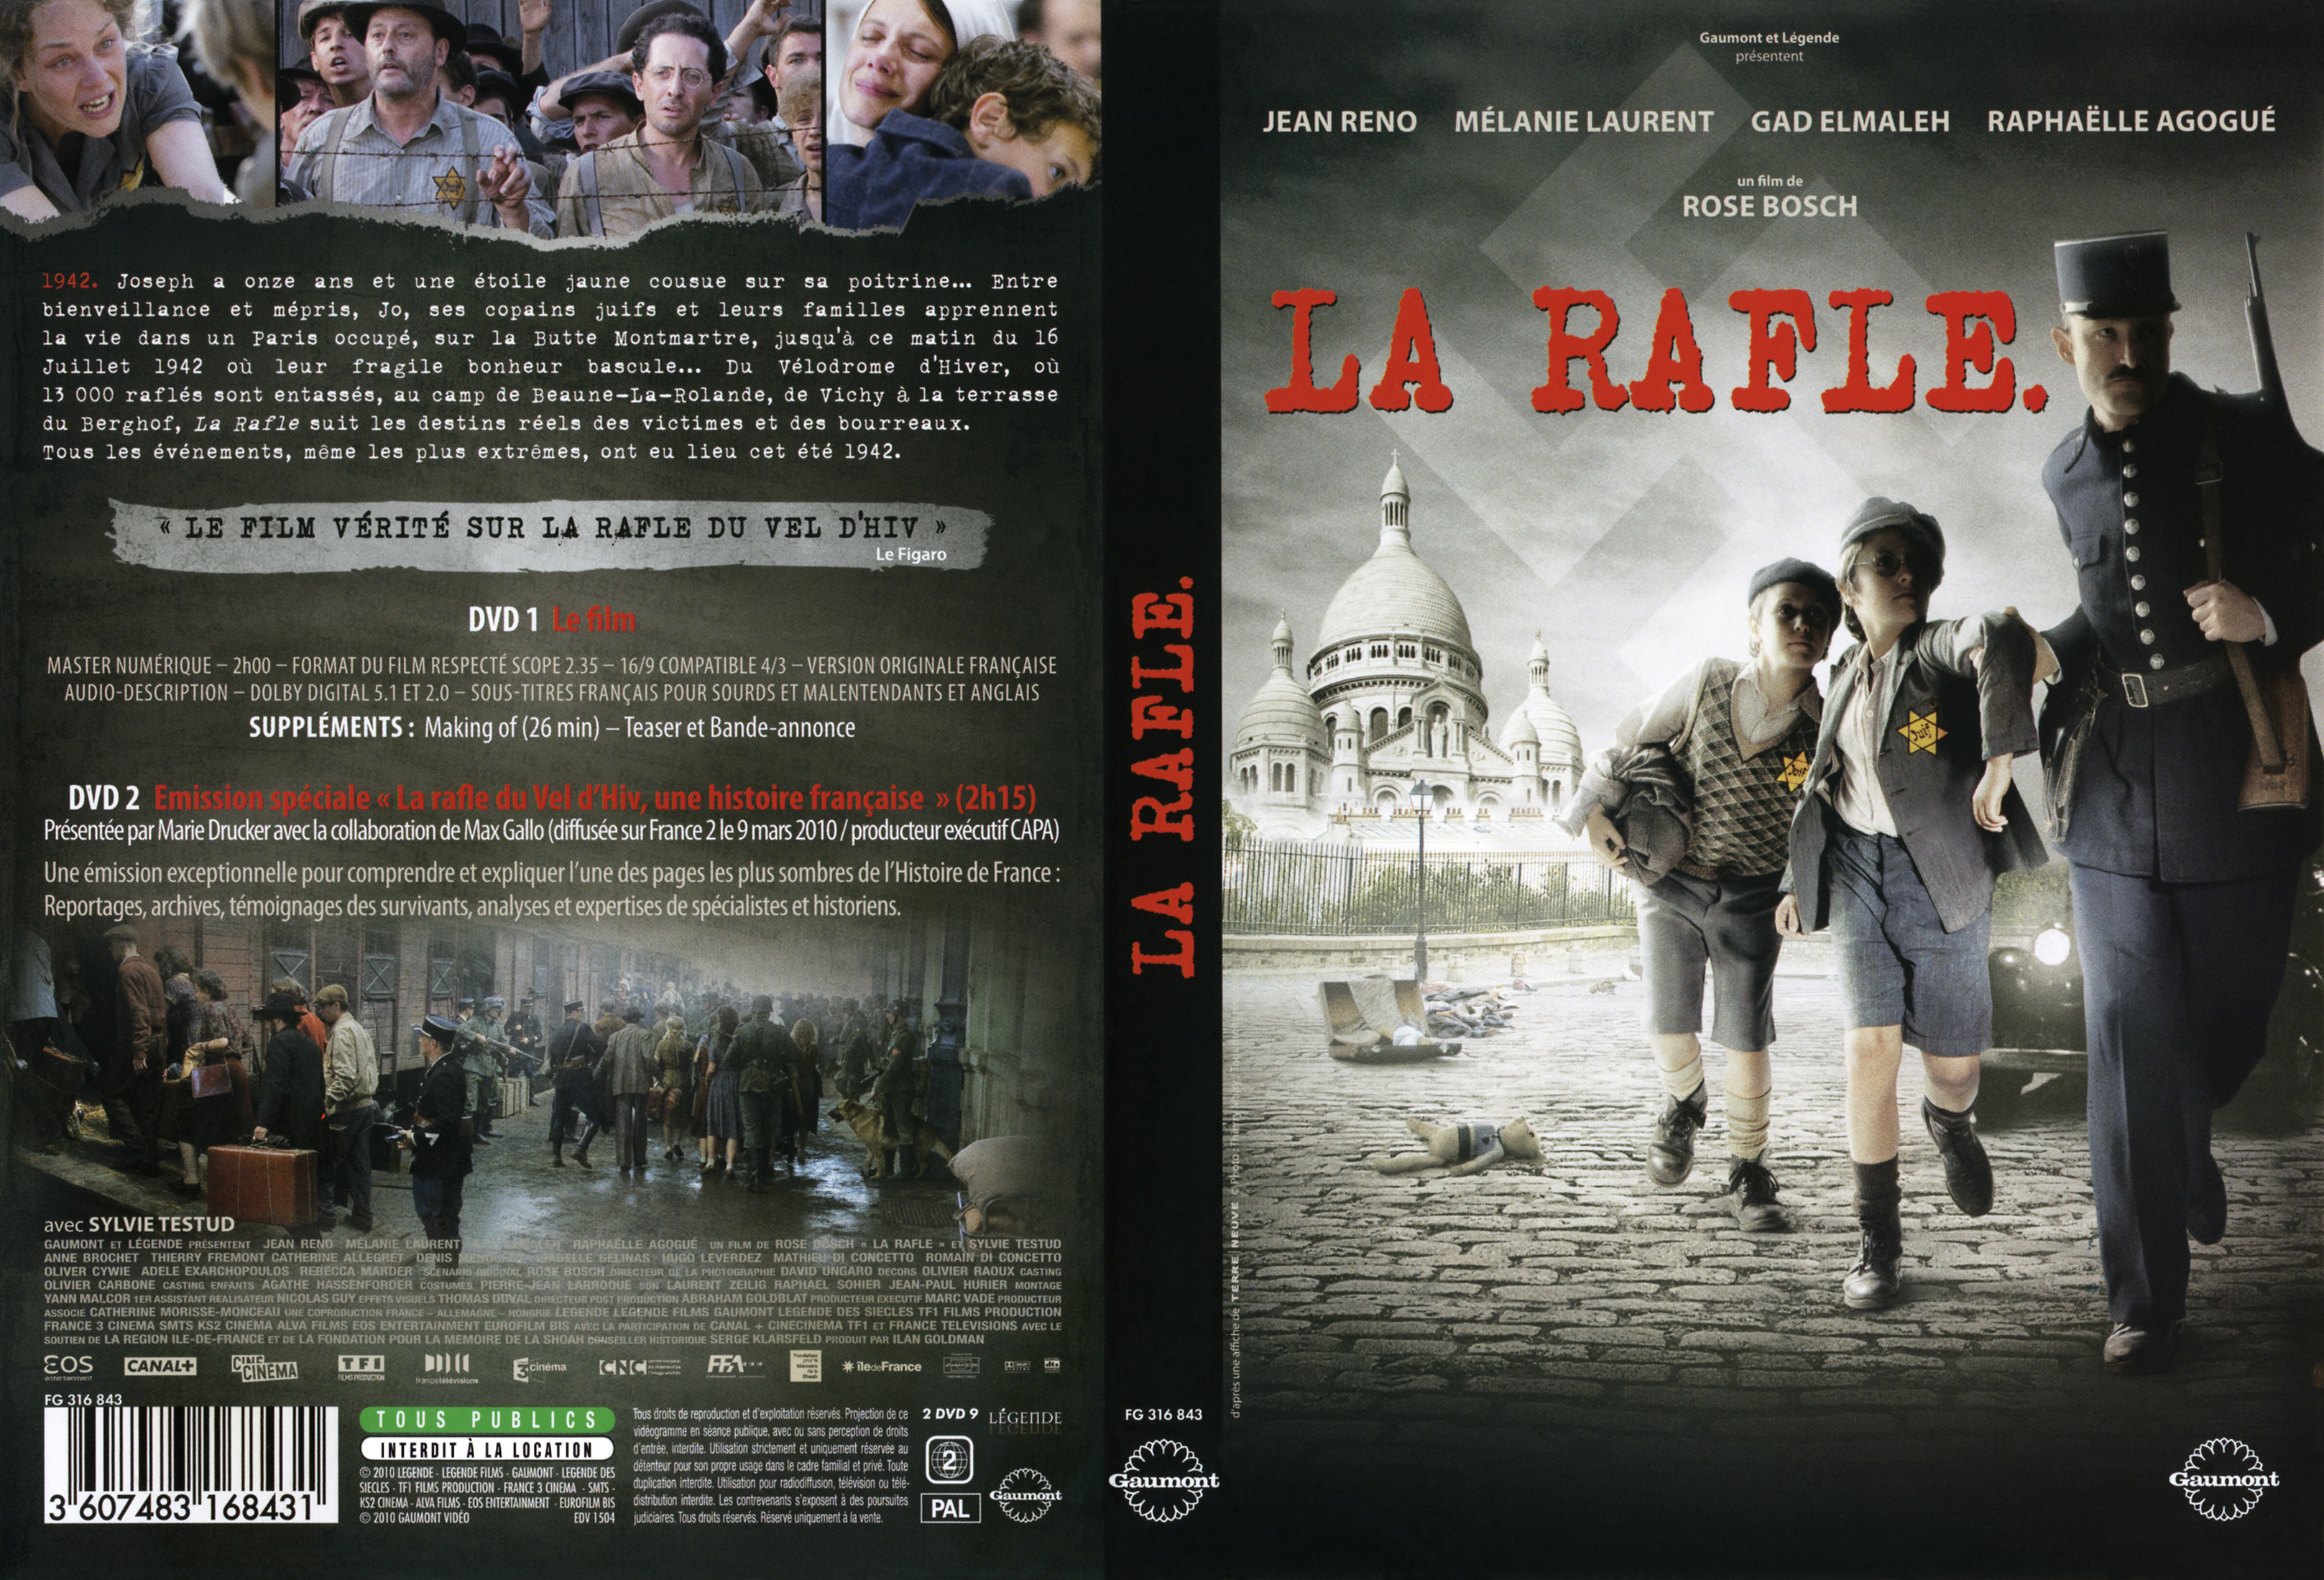 Jaquette DVD La rafle